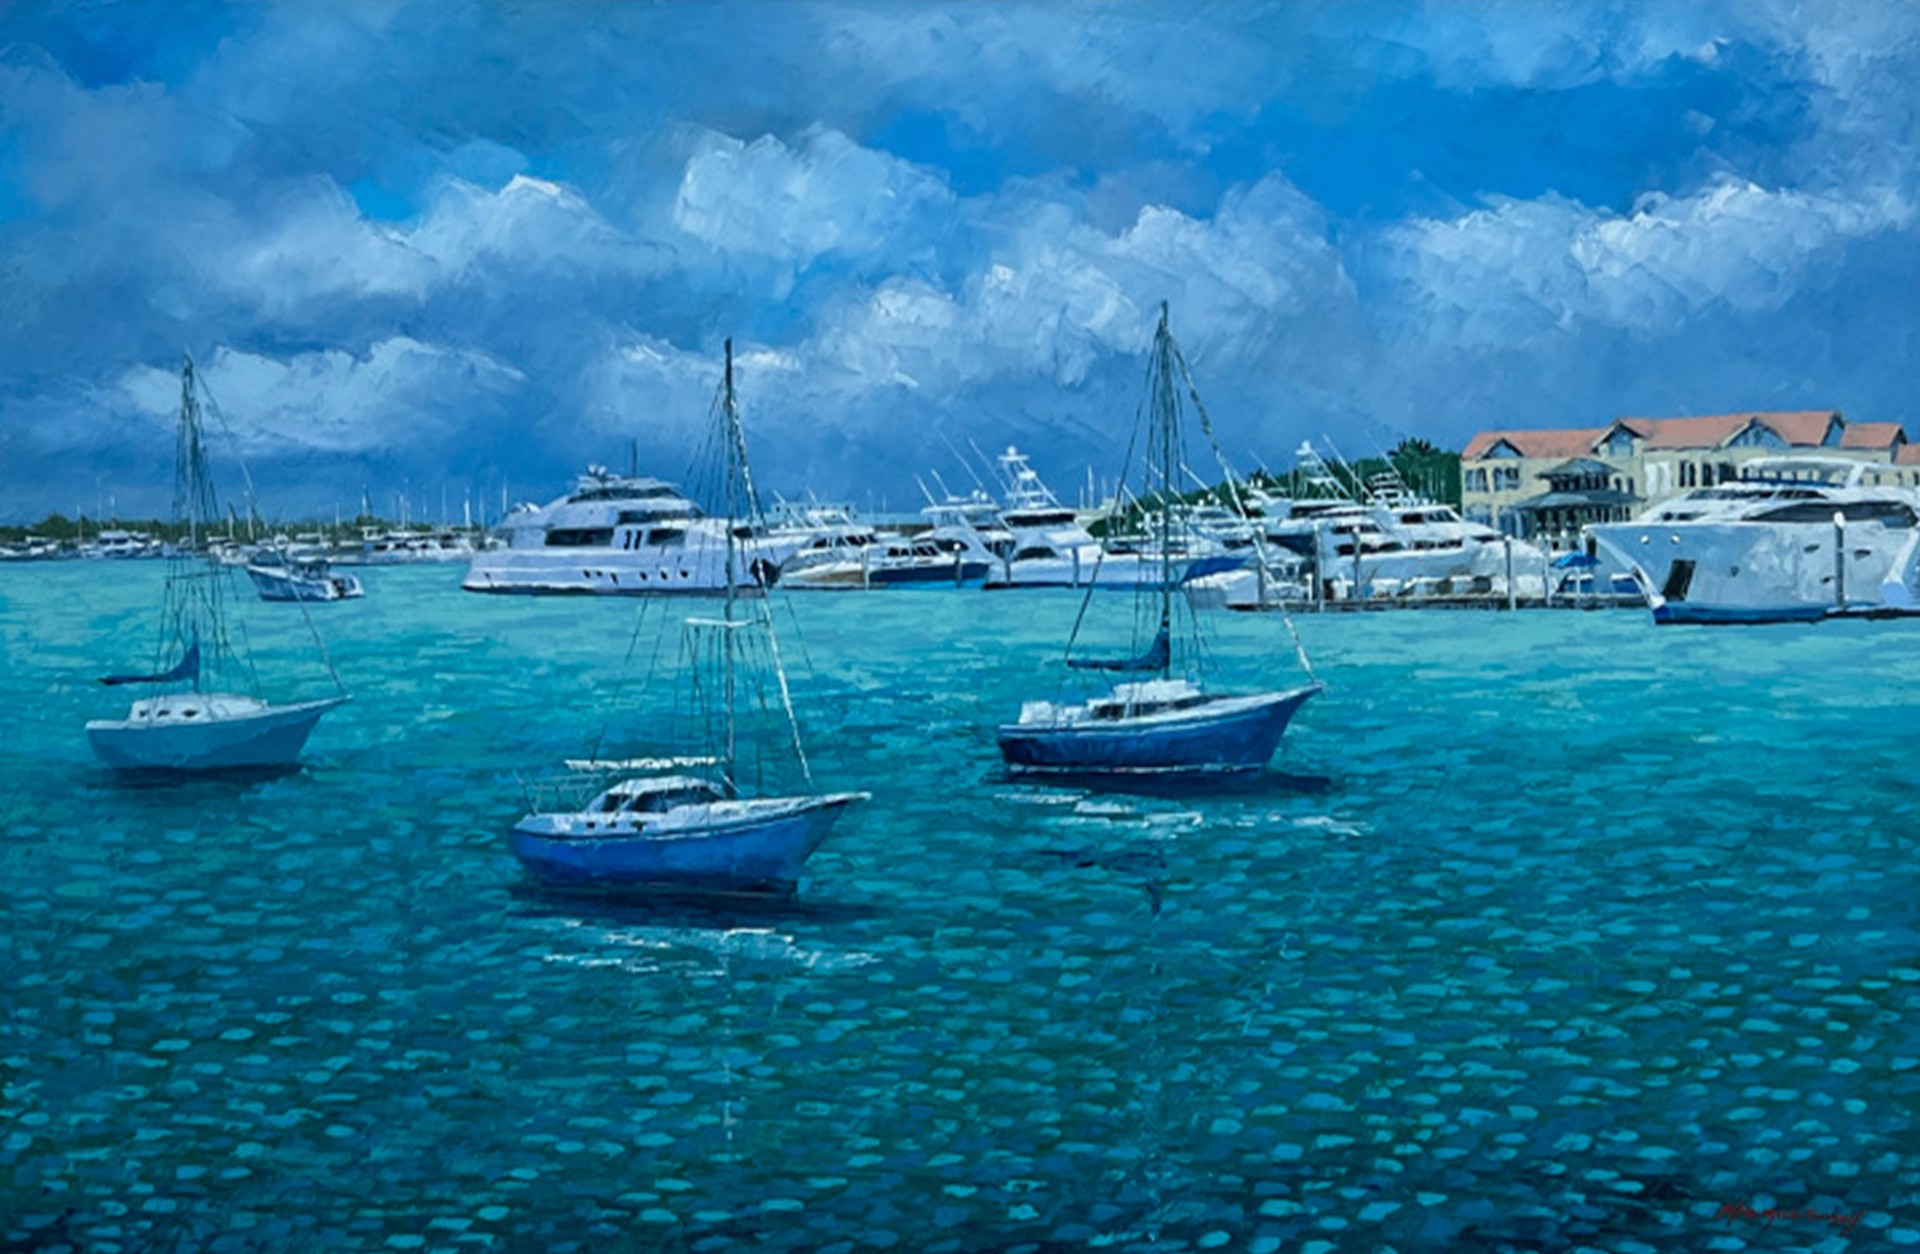 "Naples Marina" by Mauricio Garay